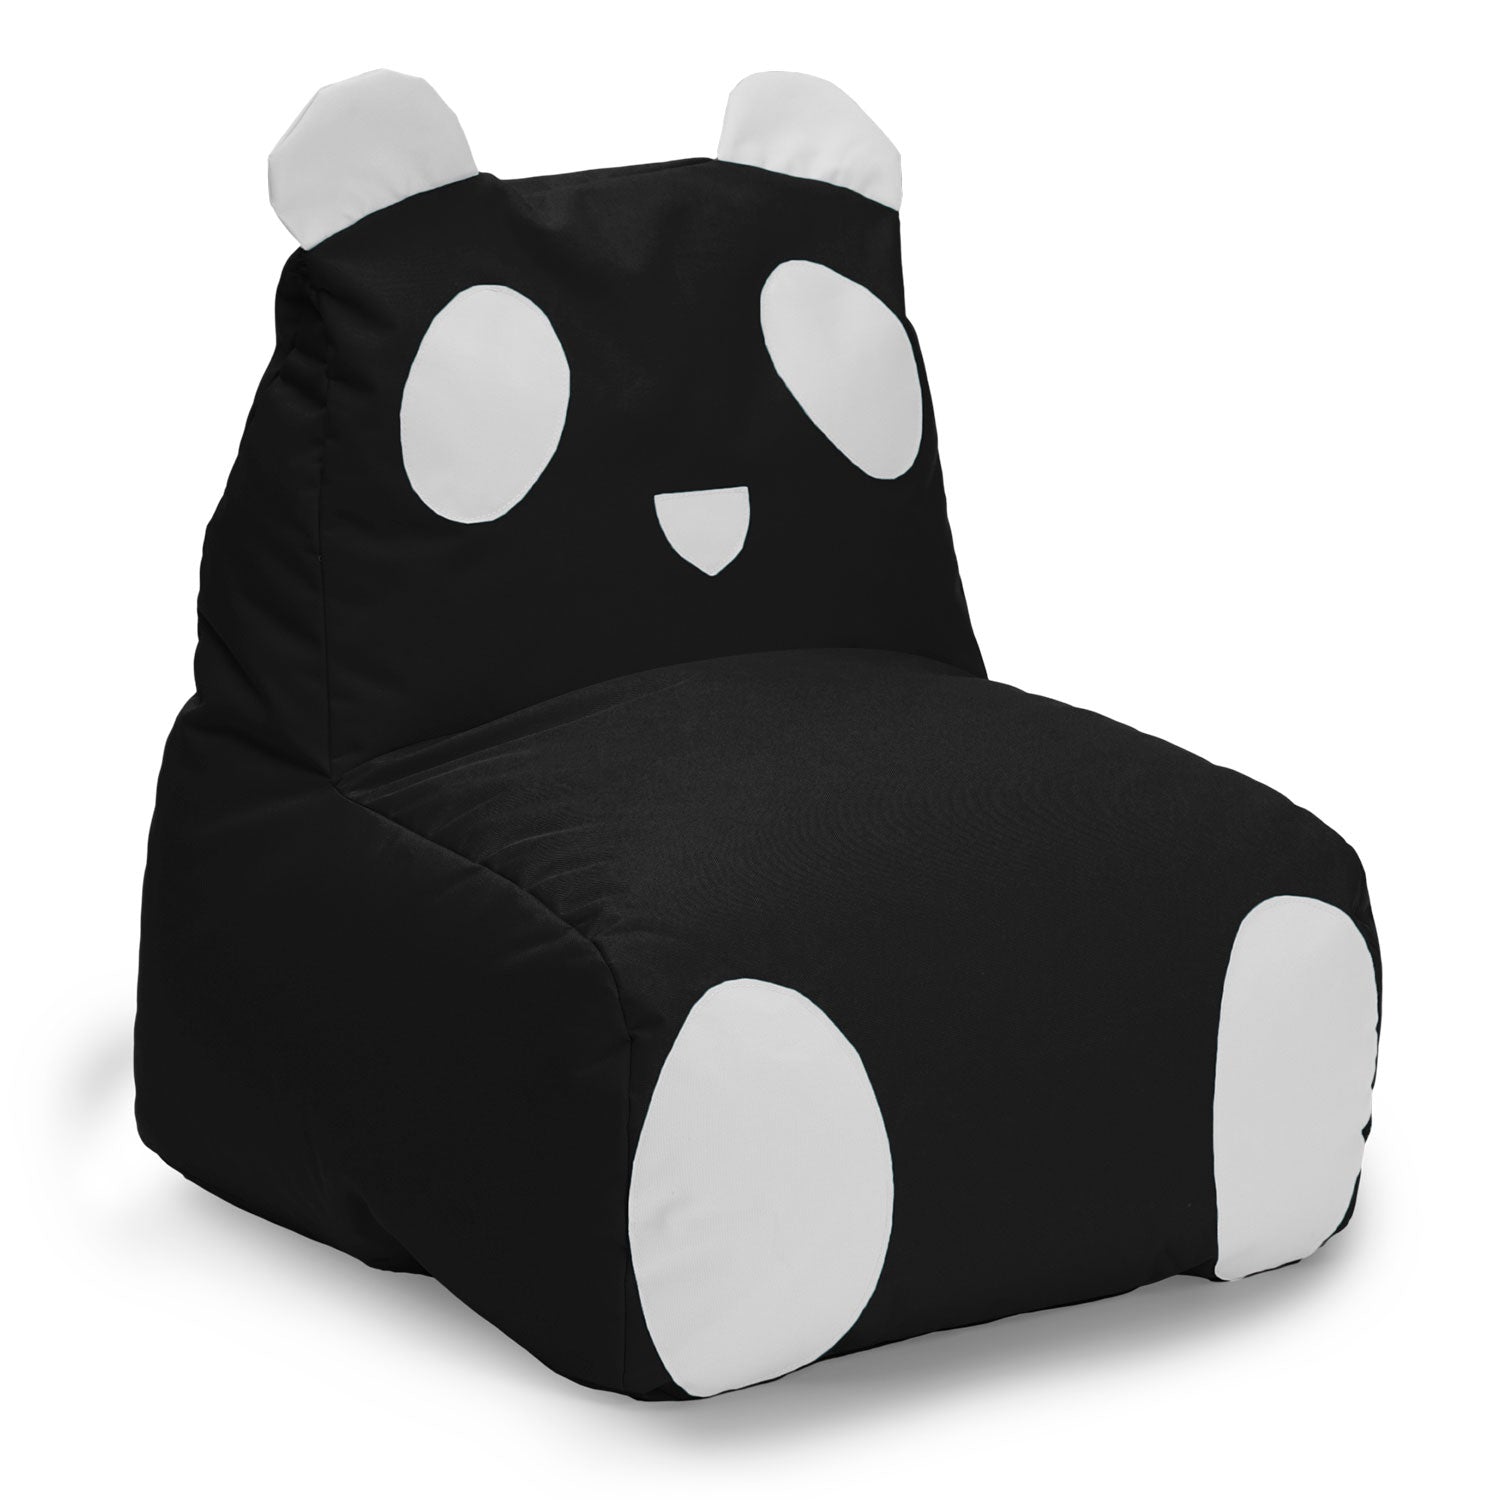 Kindersitzsack Animal Line Panda (180 L) - indoor & outdoor - Schwarz/Weiß